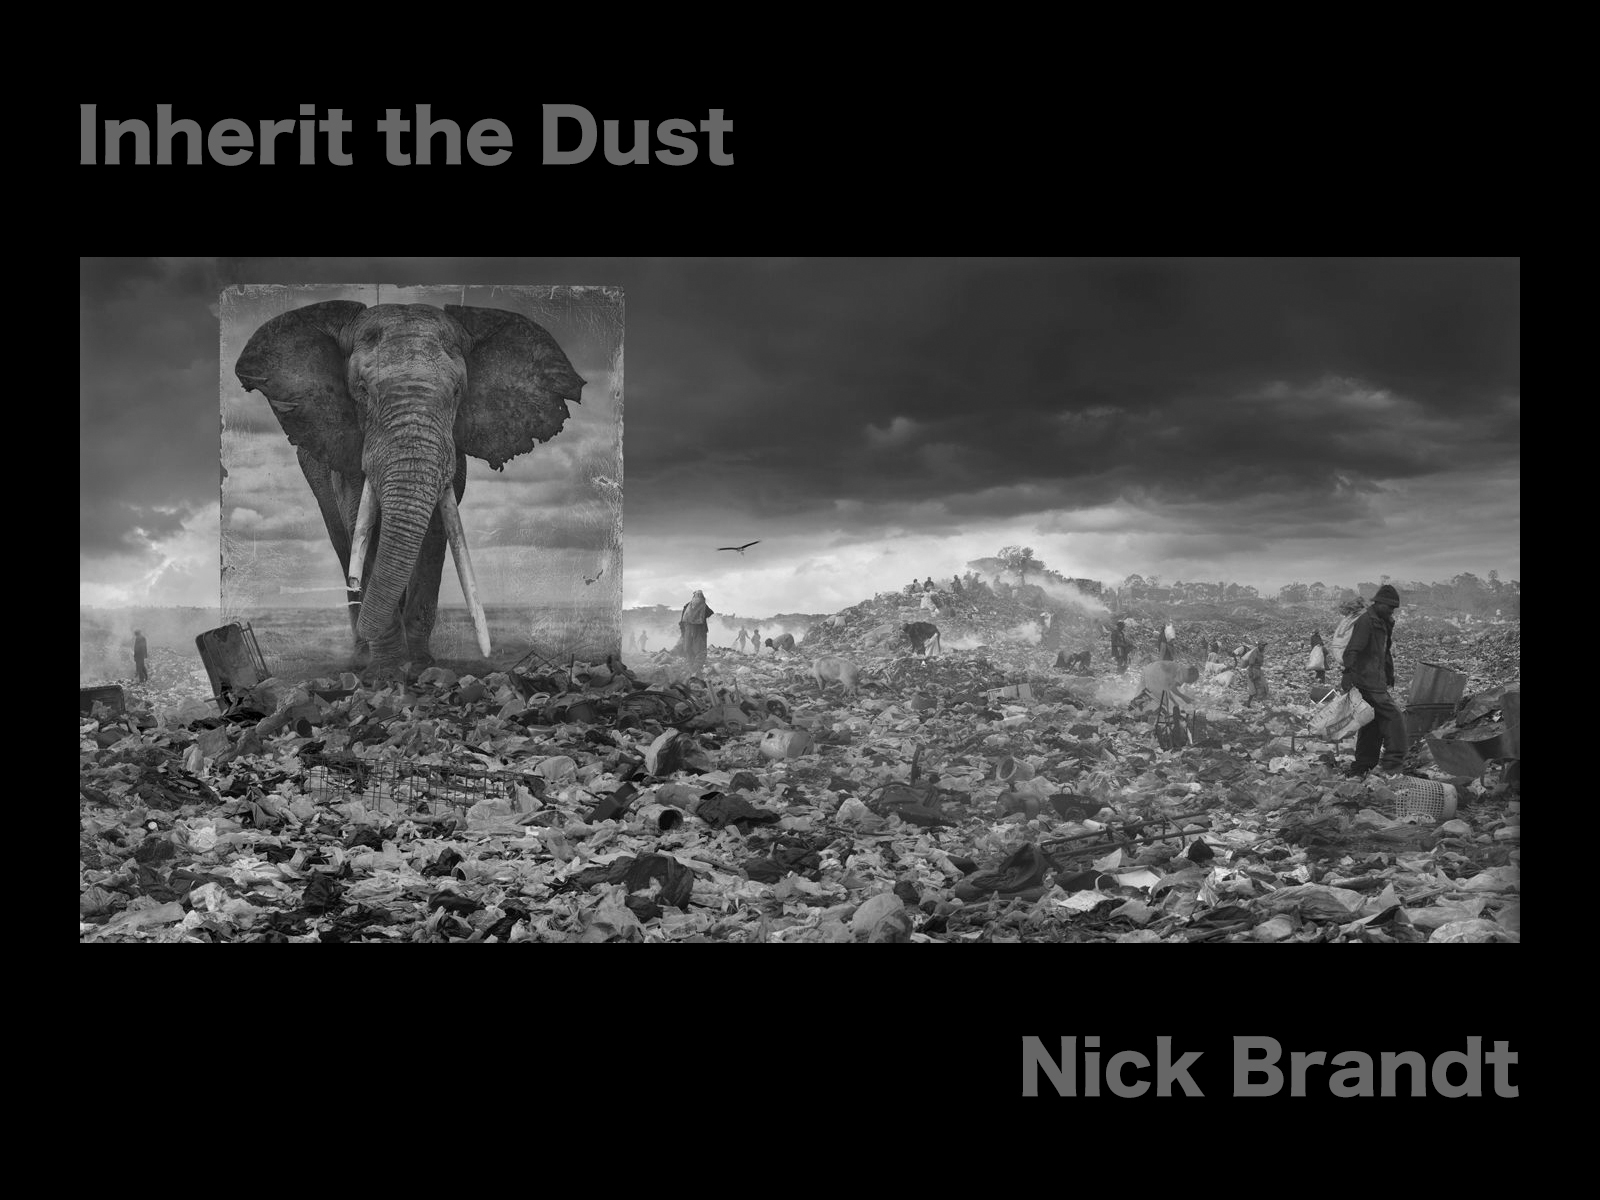 NICK BRANDT – Inherit the Dust